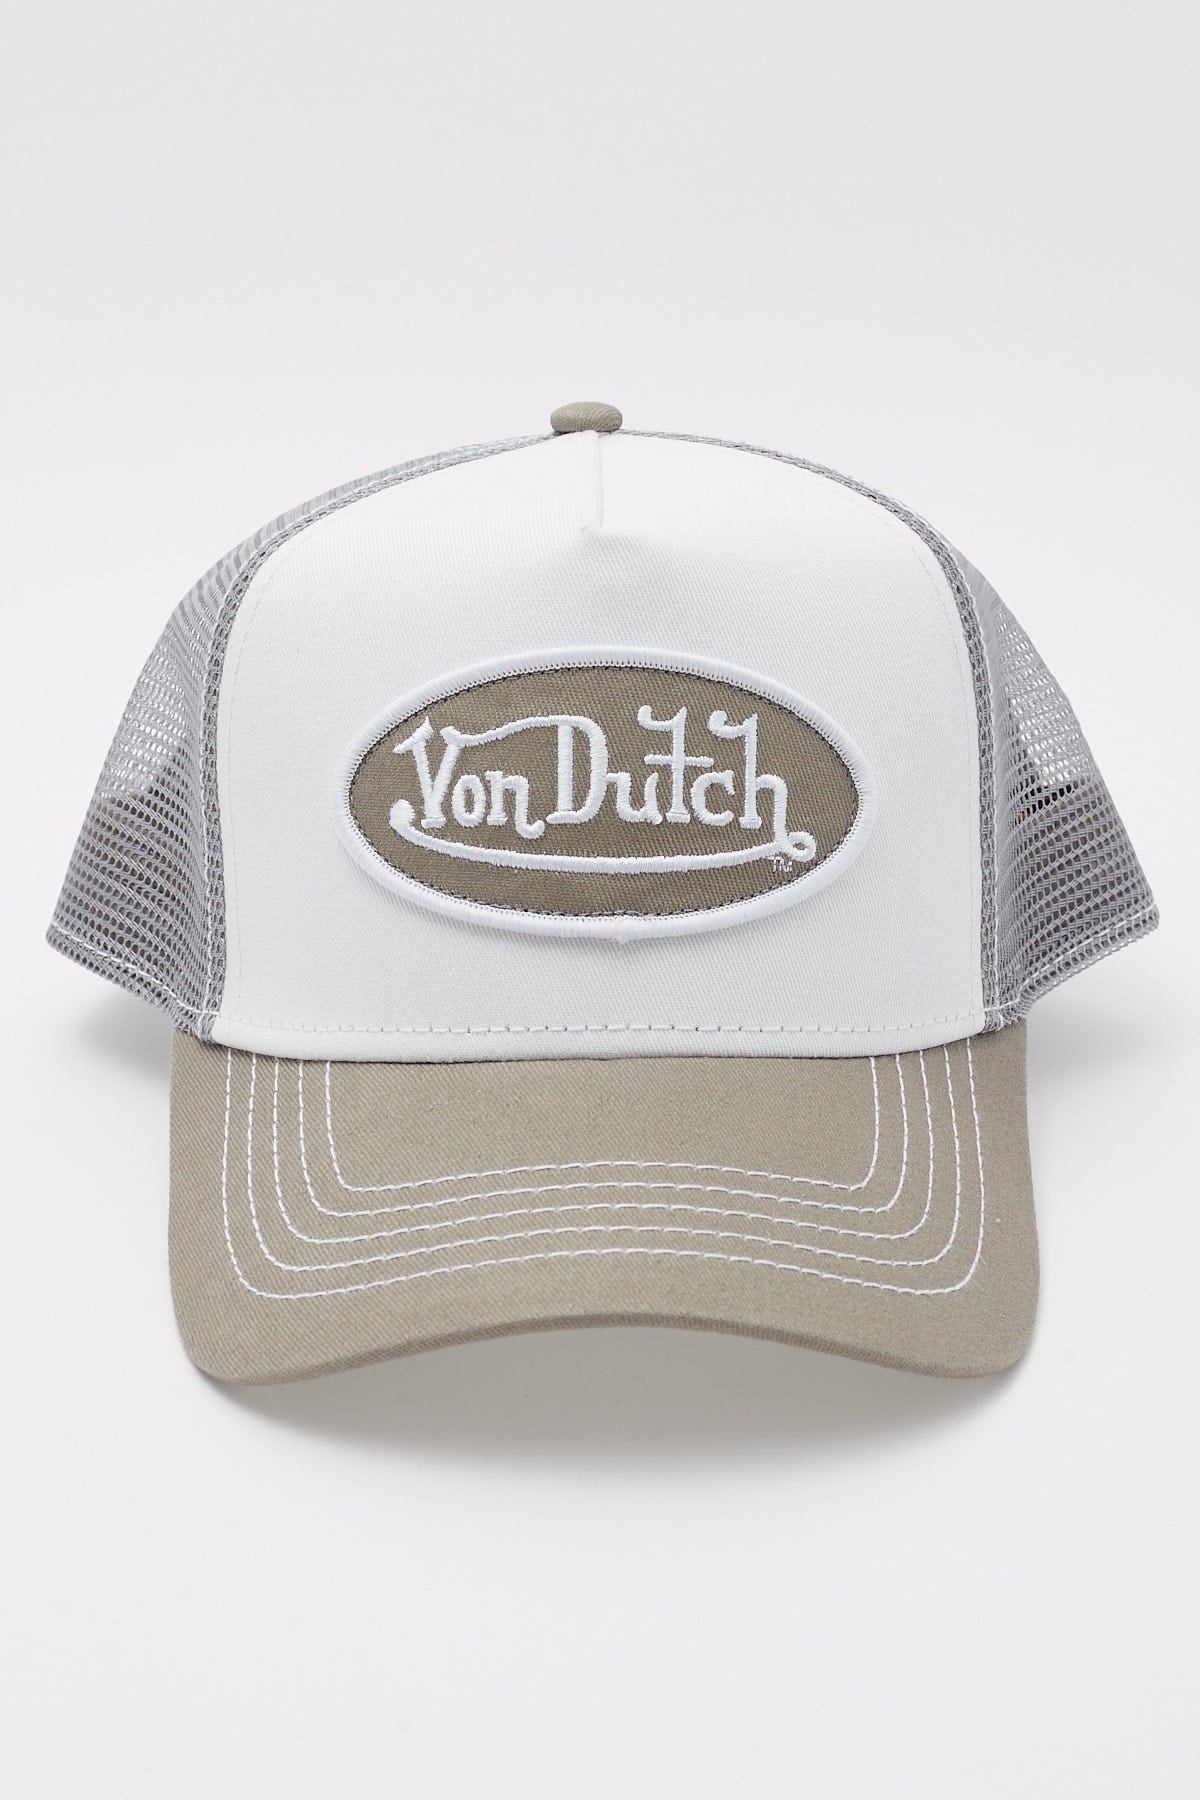 Von Dutch Grey & White Trucker White/Grey – Universal Store